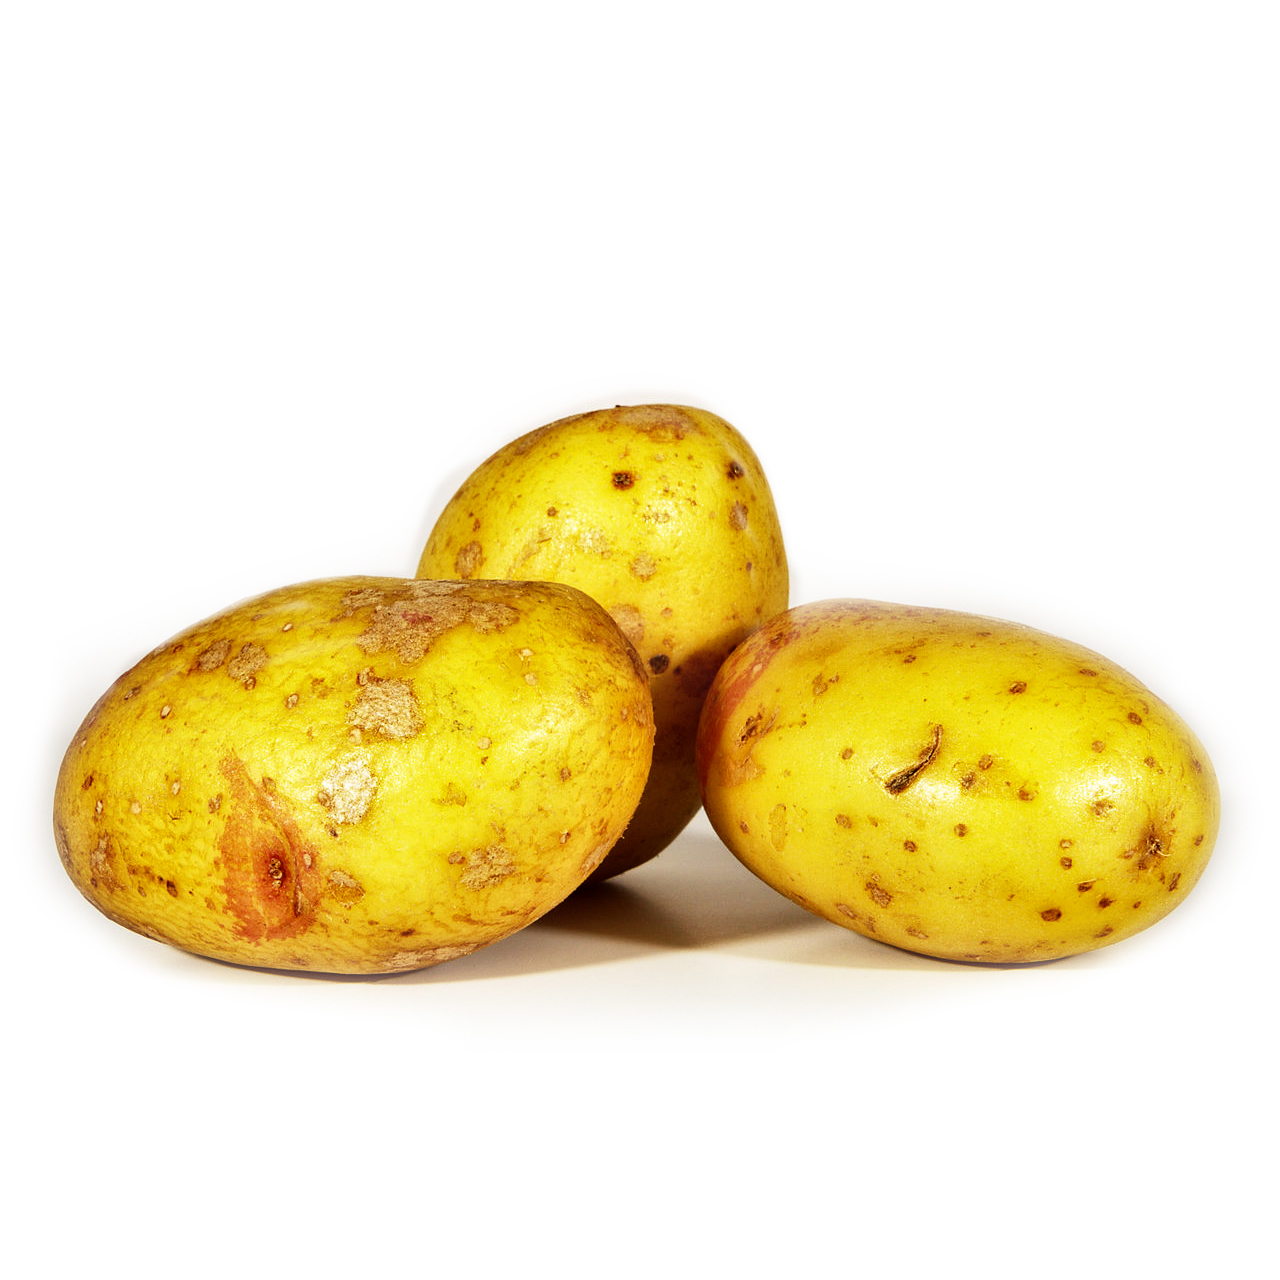 Organic King Edward Potatoes 1kg - AUS*